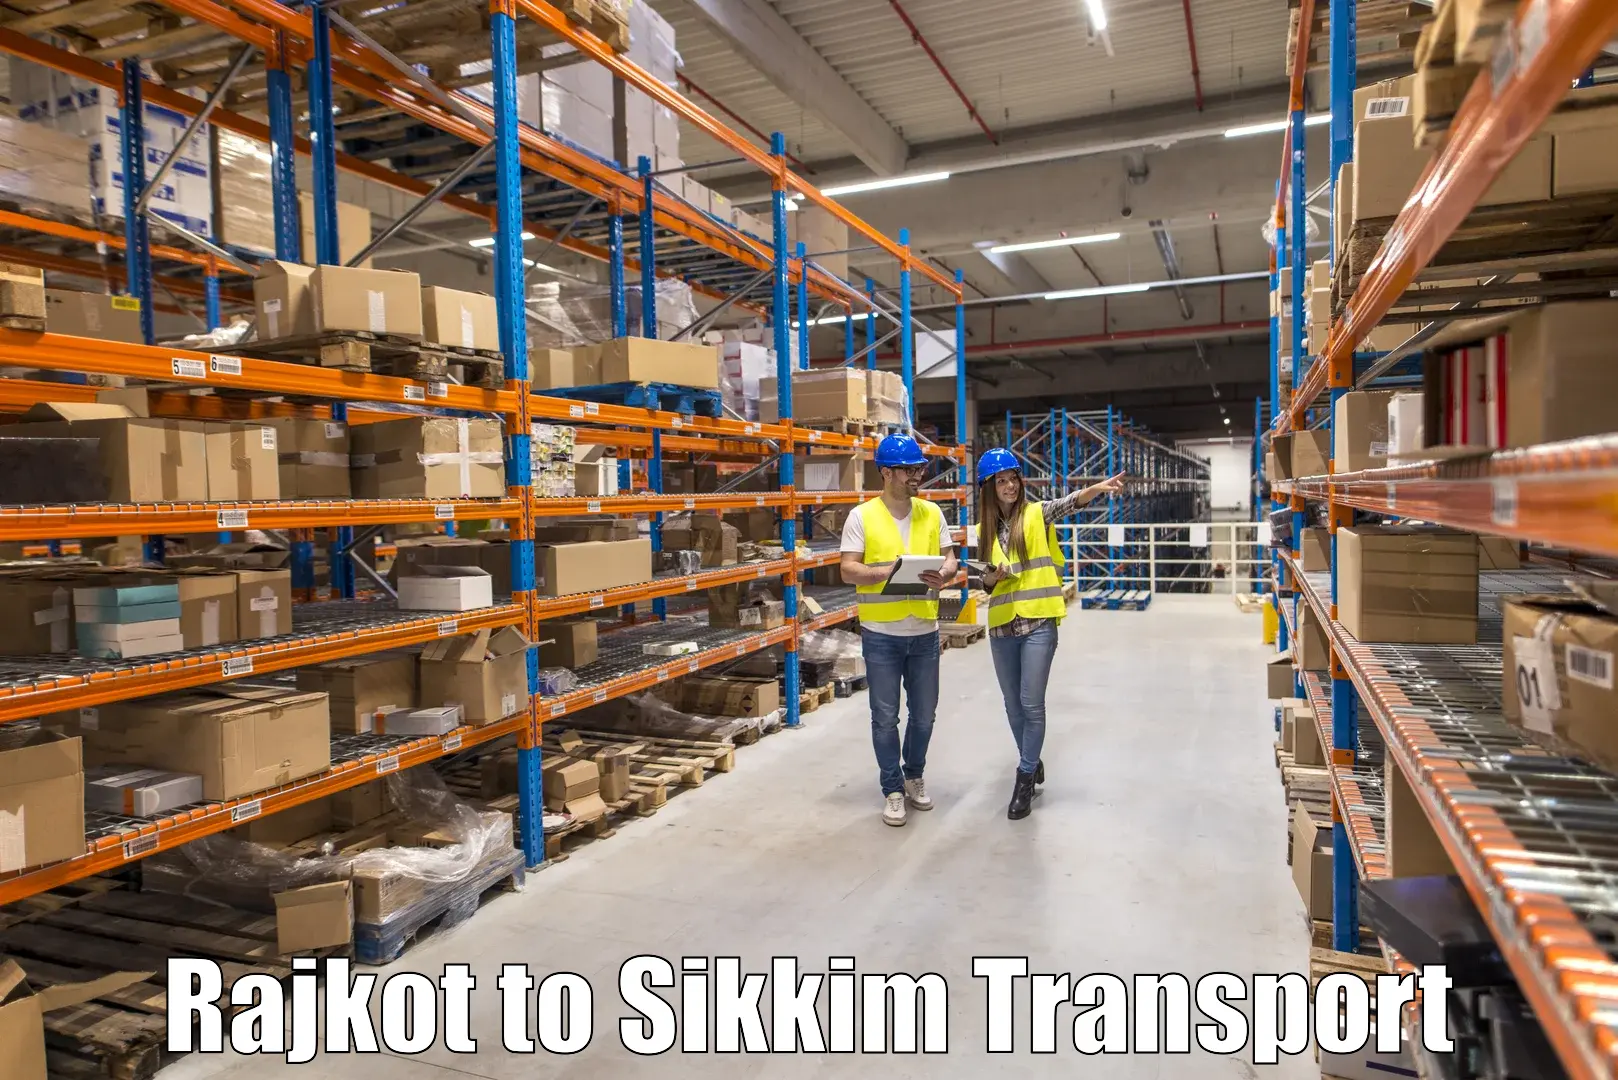 International cargo transportation services Rajkot to Pelling